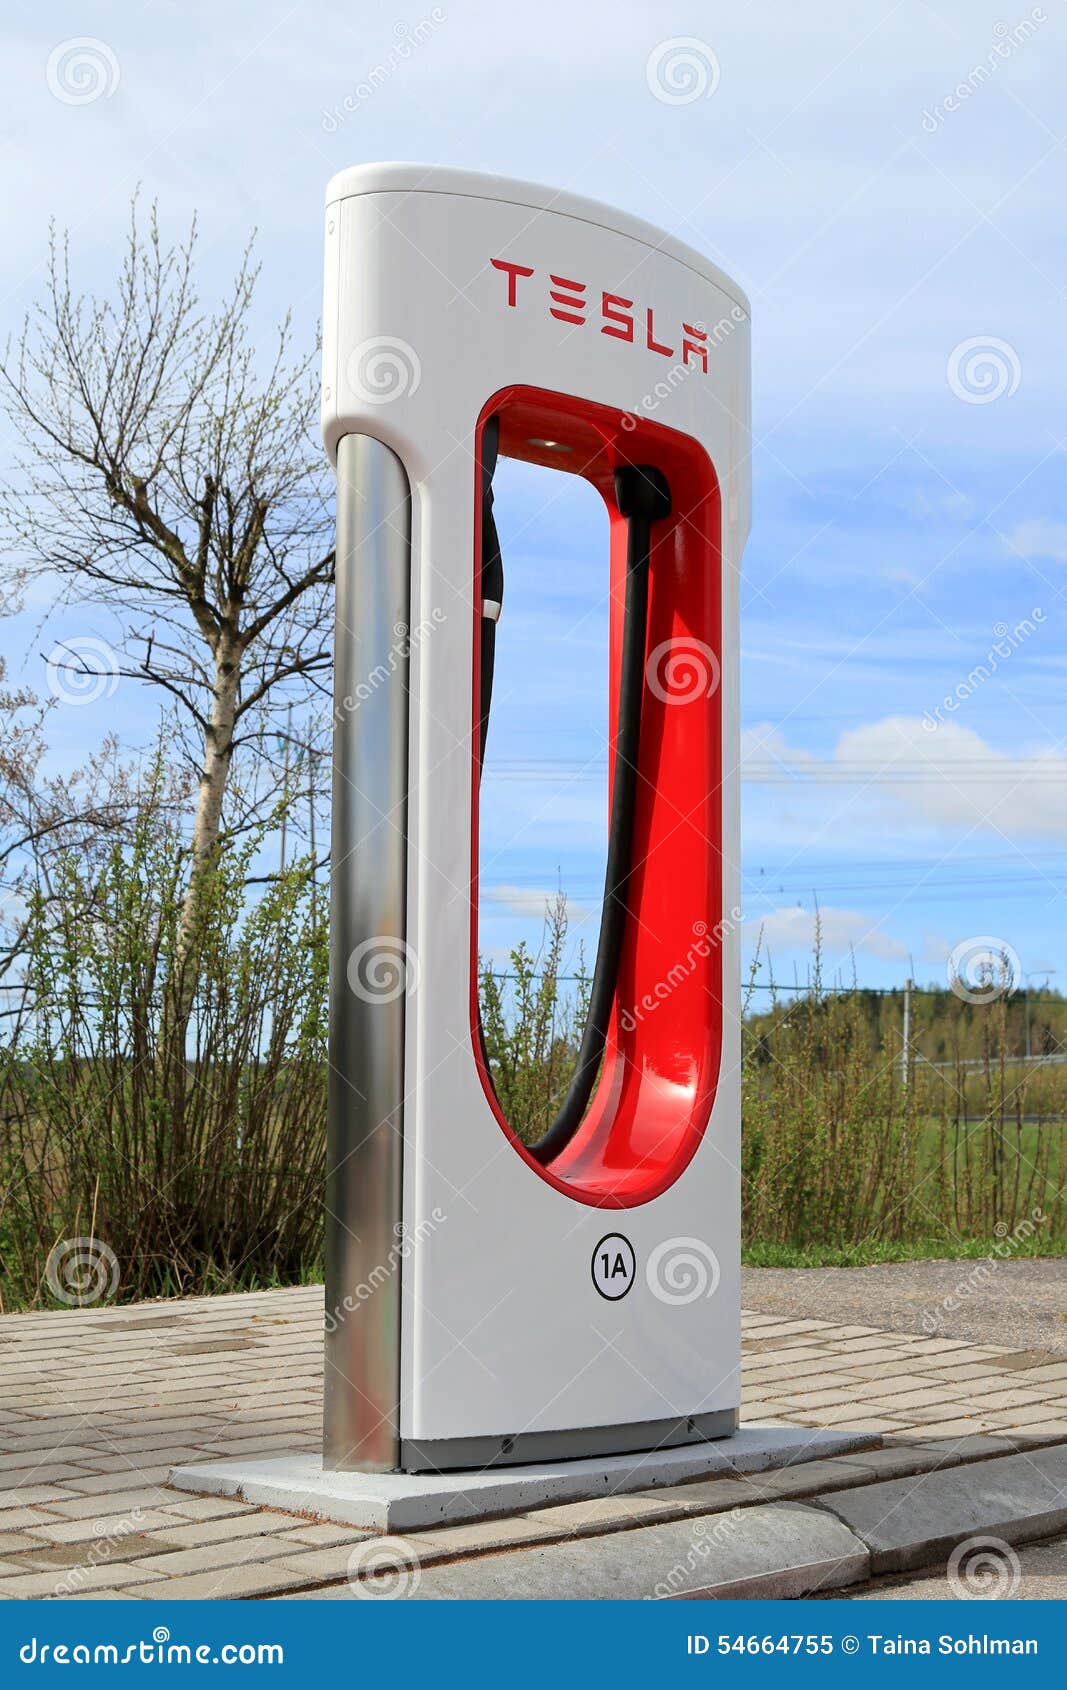 Tesla Supercharger Finland